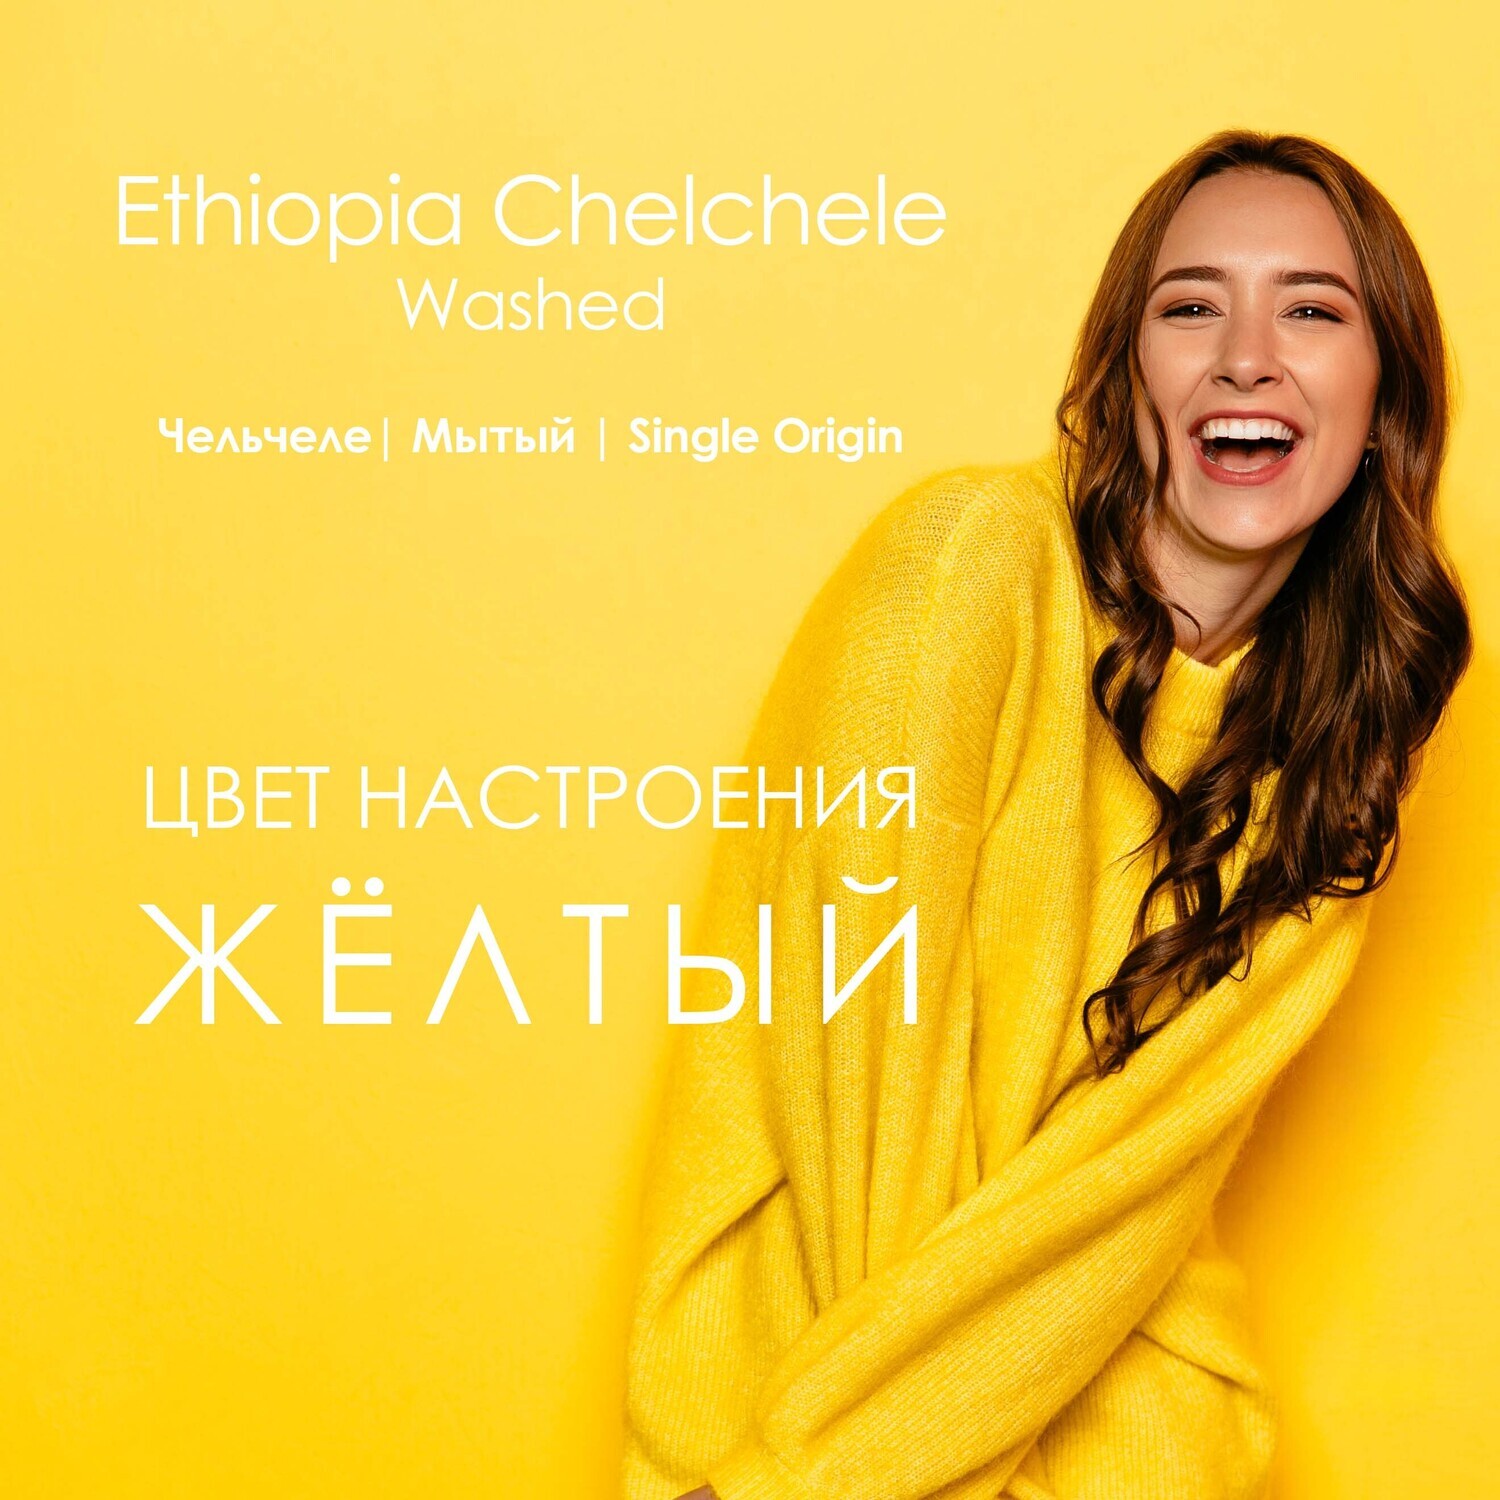 Ethiopia Chelchele | Washed | G1